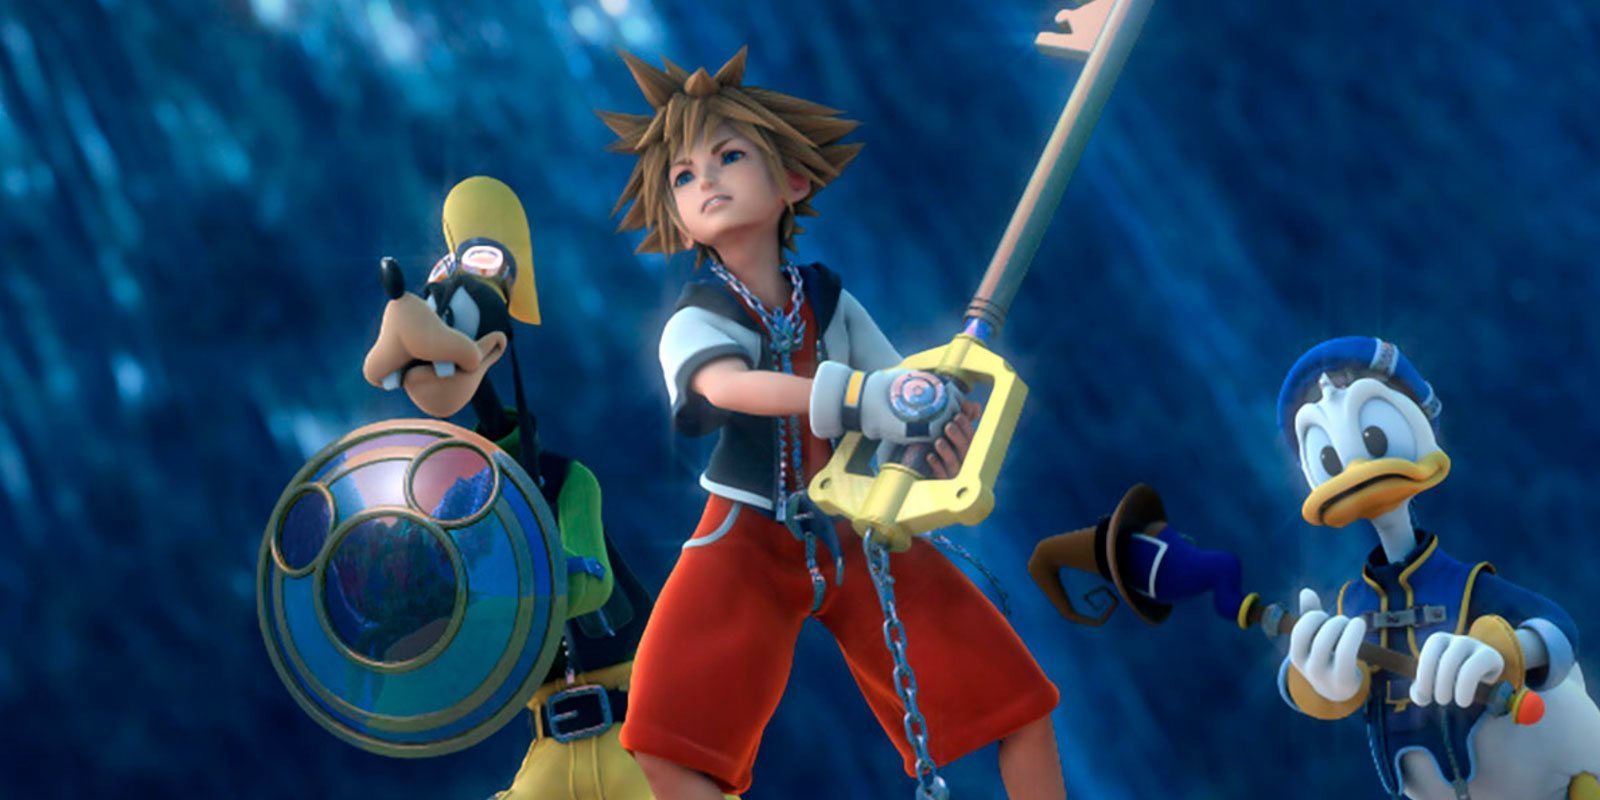 'Kingdom Hearts III': Todas las claves para entender la historia hasta ahora